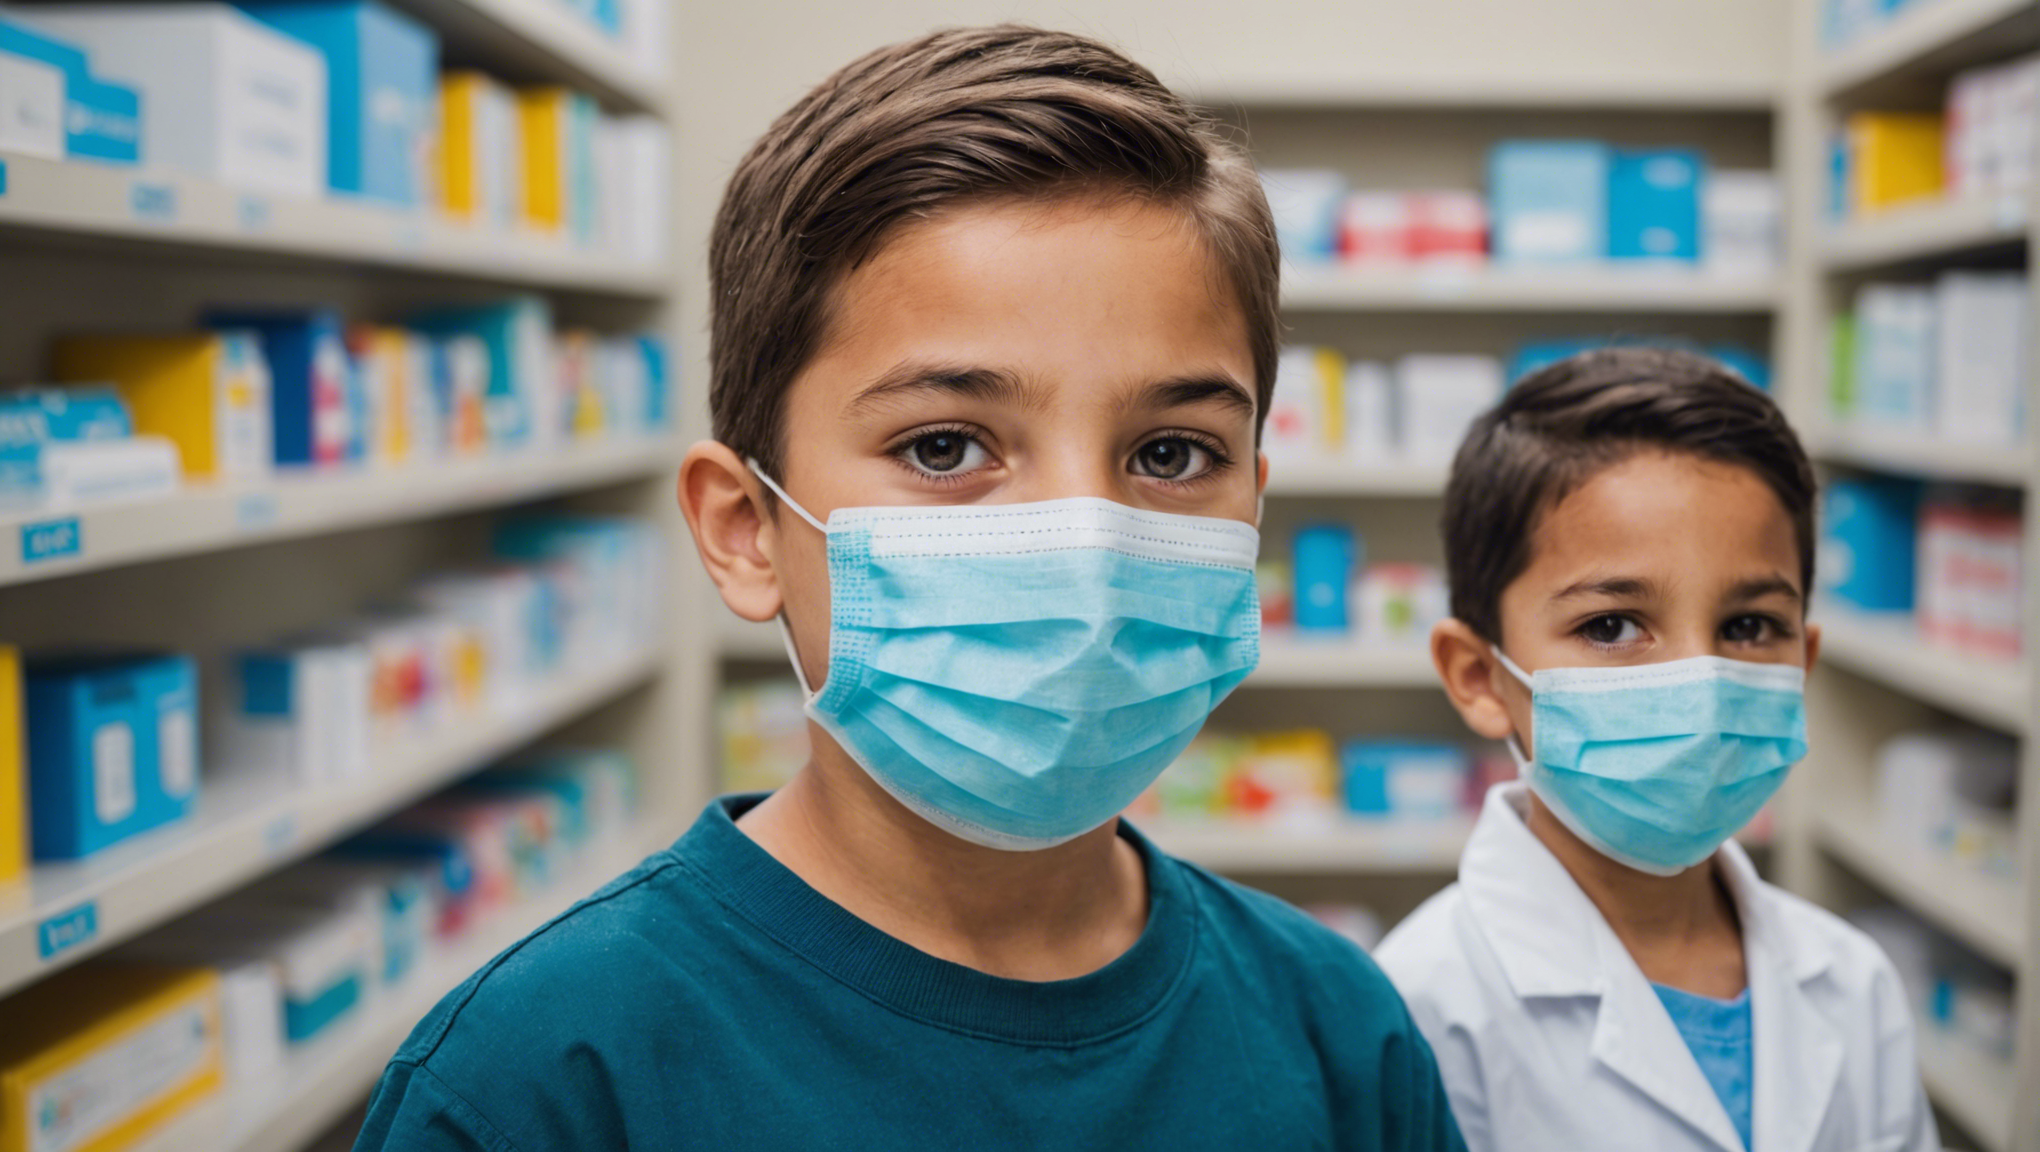 découvrez où vous pouvez trouver des masques chirurgicaux pédiatriques en parapharmacie pour protéger vos enfants efficacement.